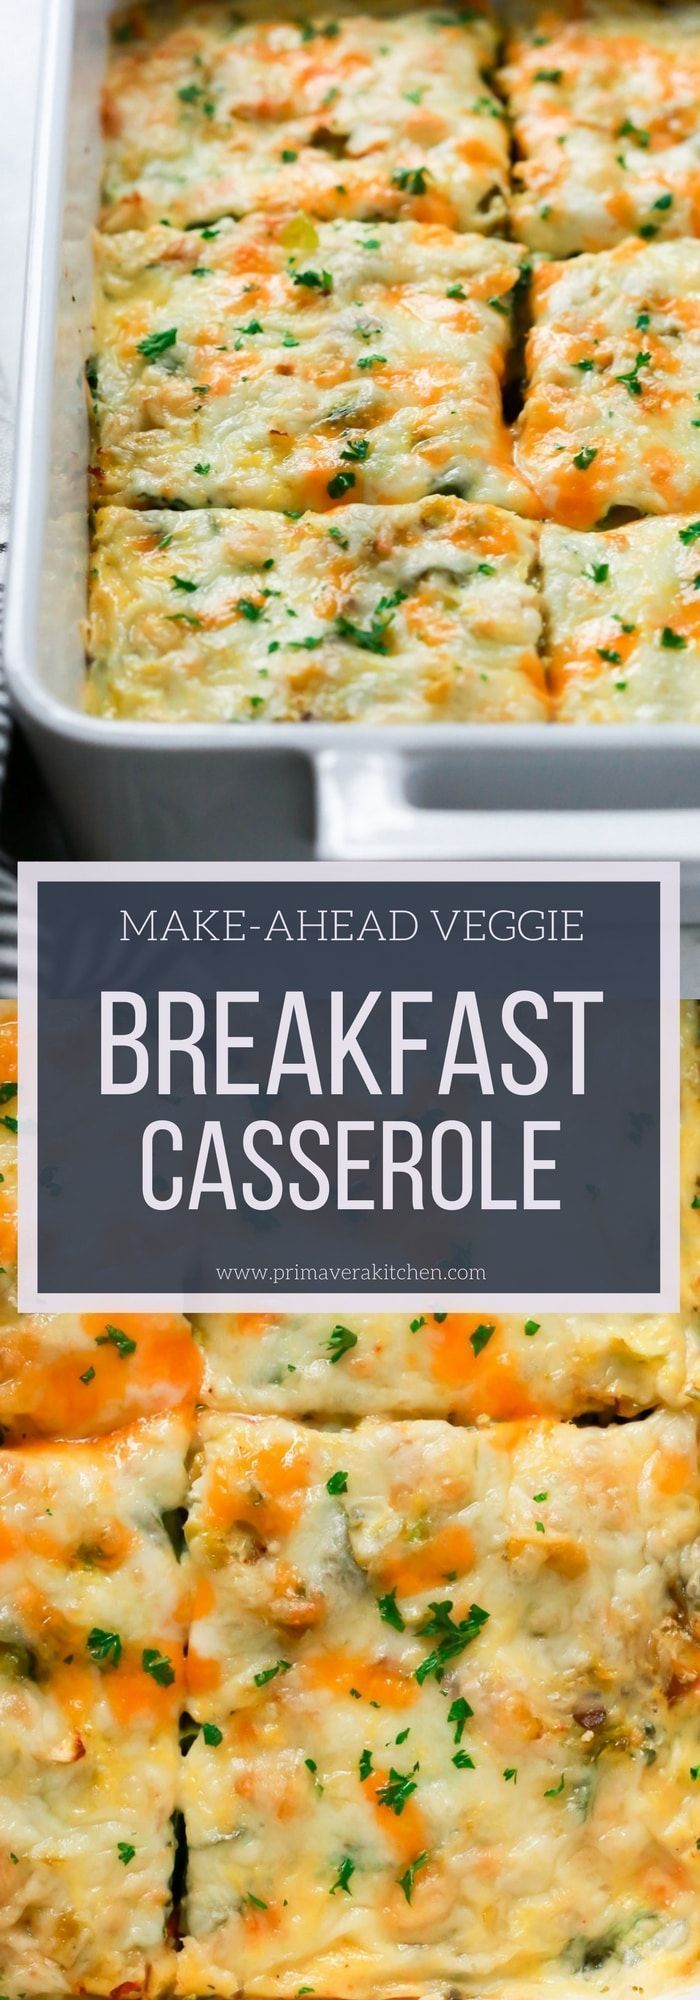 Make-Ahead Veggie Breakfast Casserole -   15 healthy recipes Breakfast casserole ideas